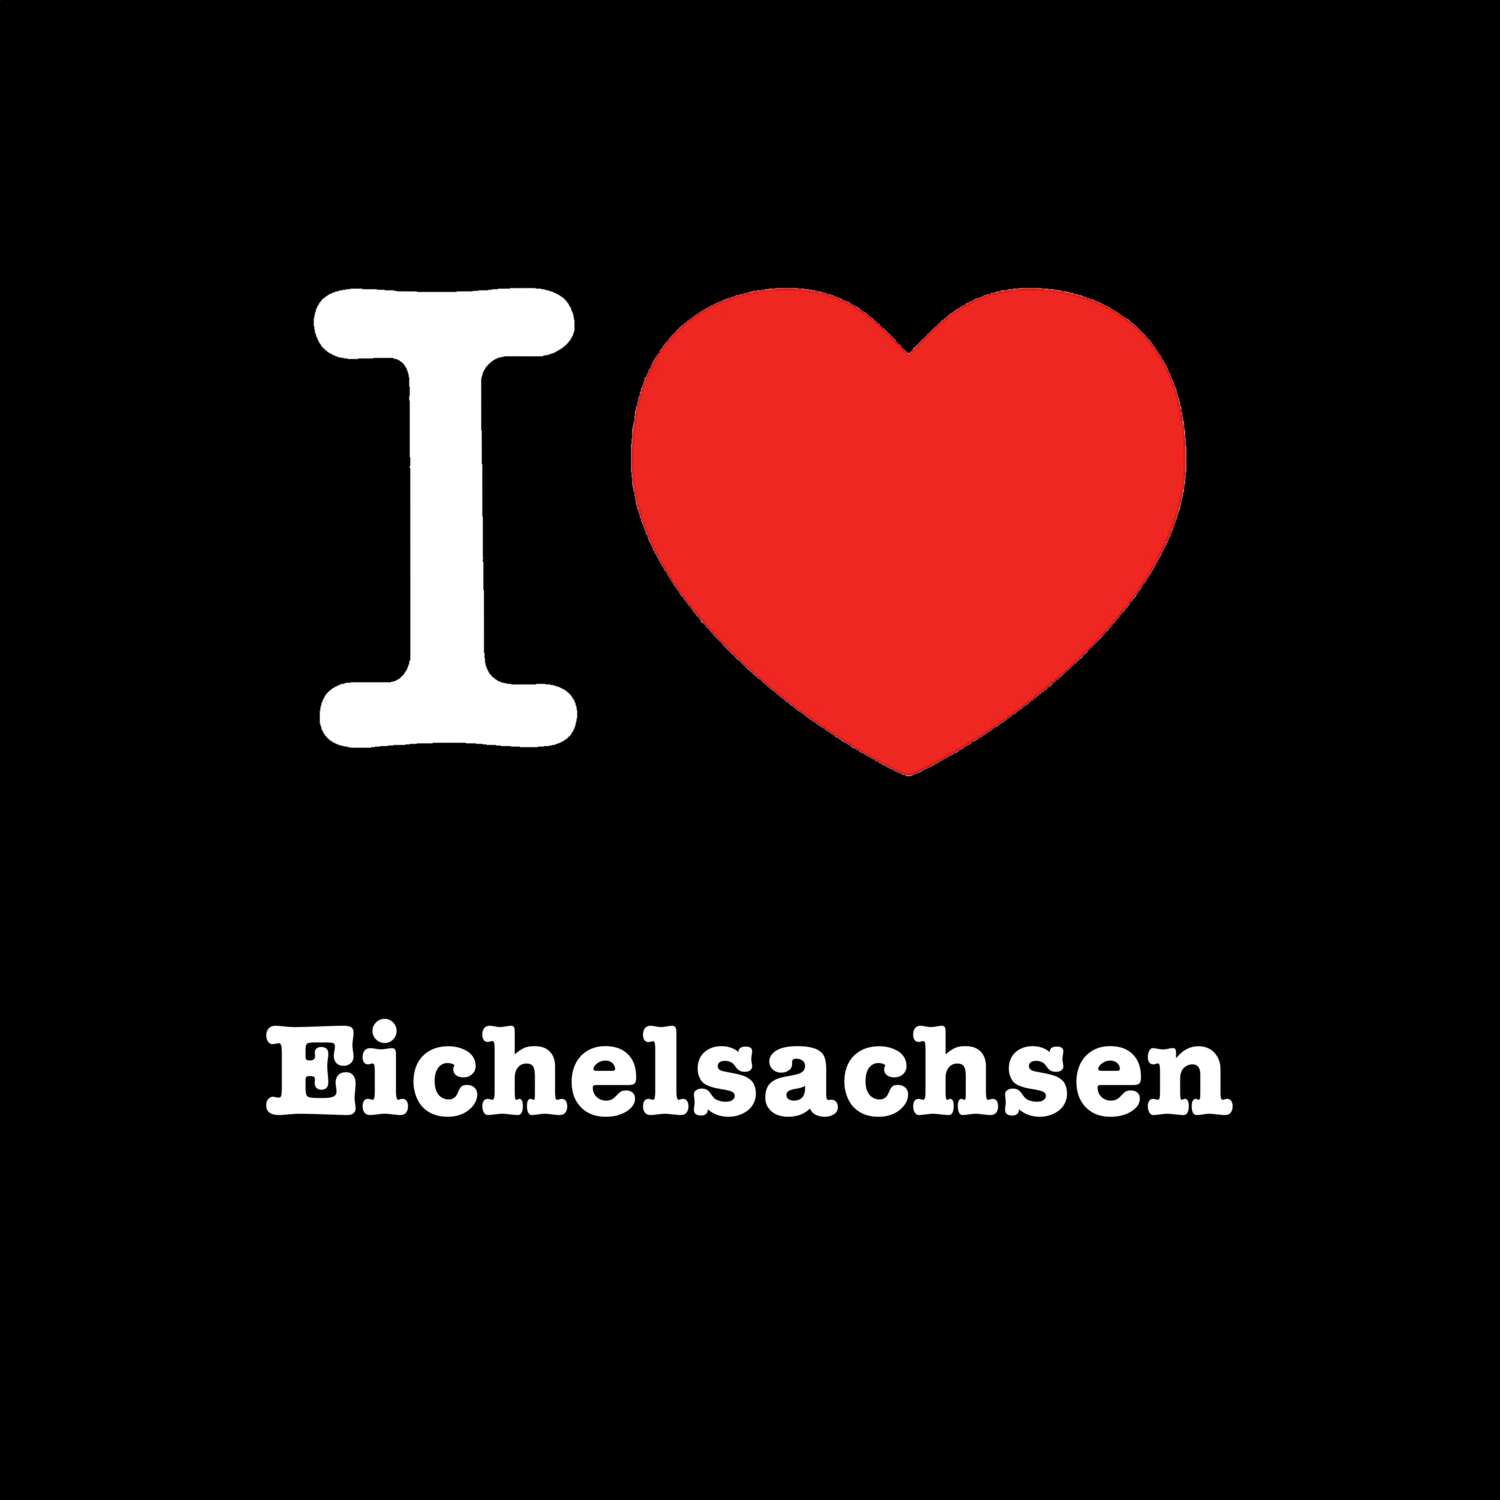 Eichelsachsen T-Shirt »I love«